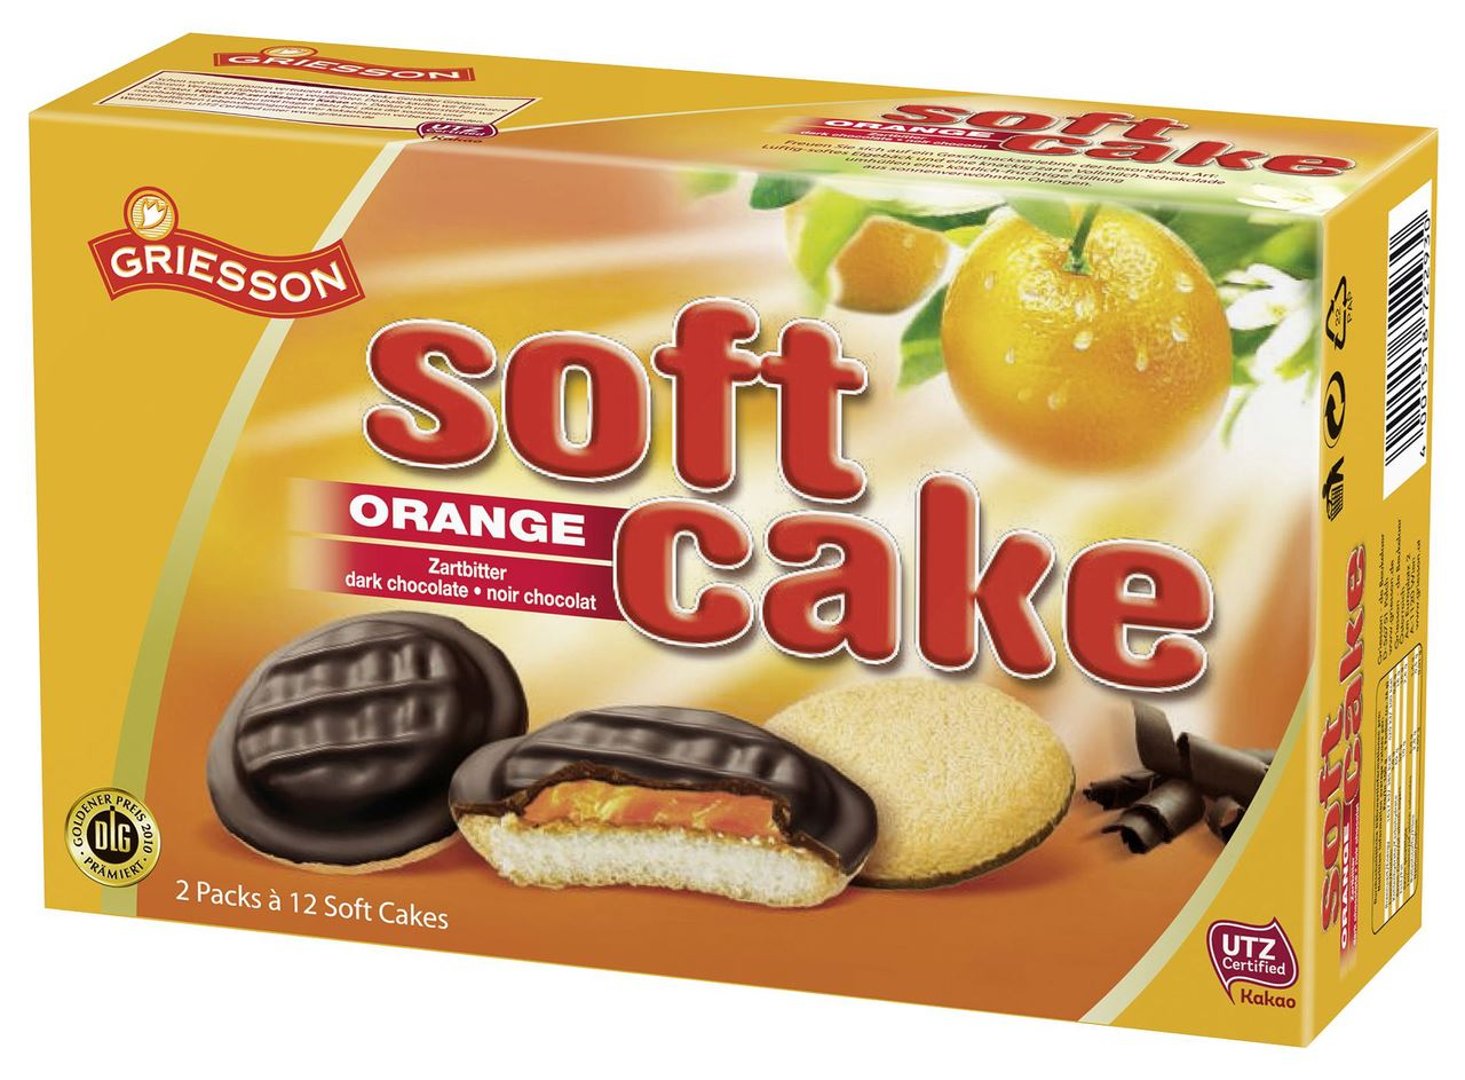 Griesson - Soft Cake Minis Orange - 300 g Schachtel